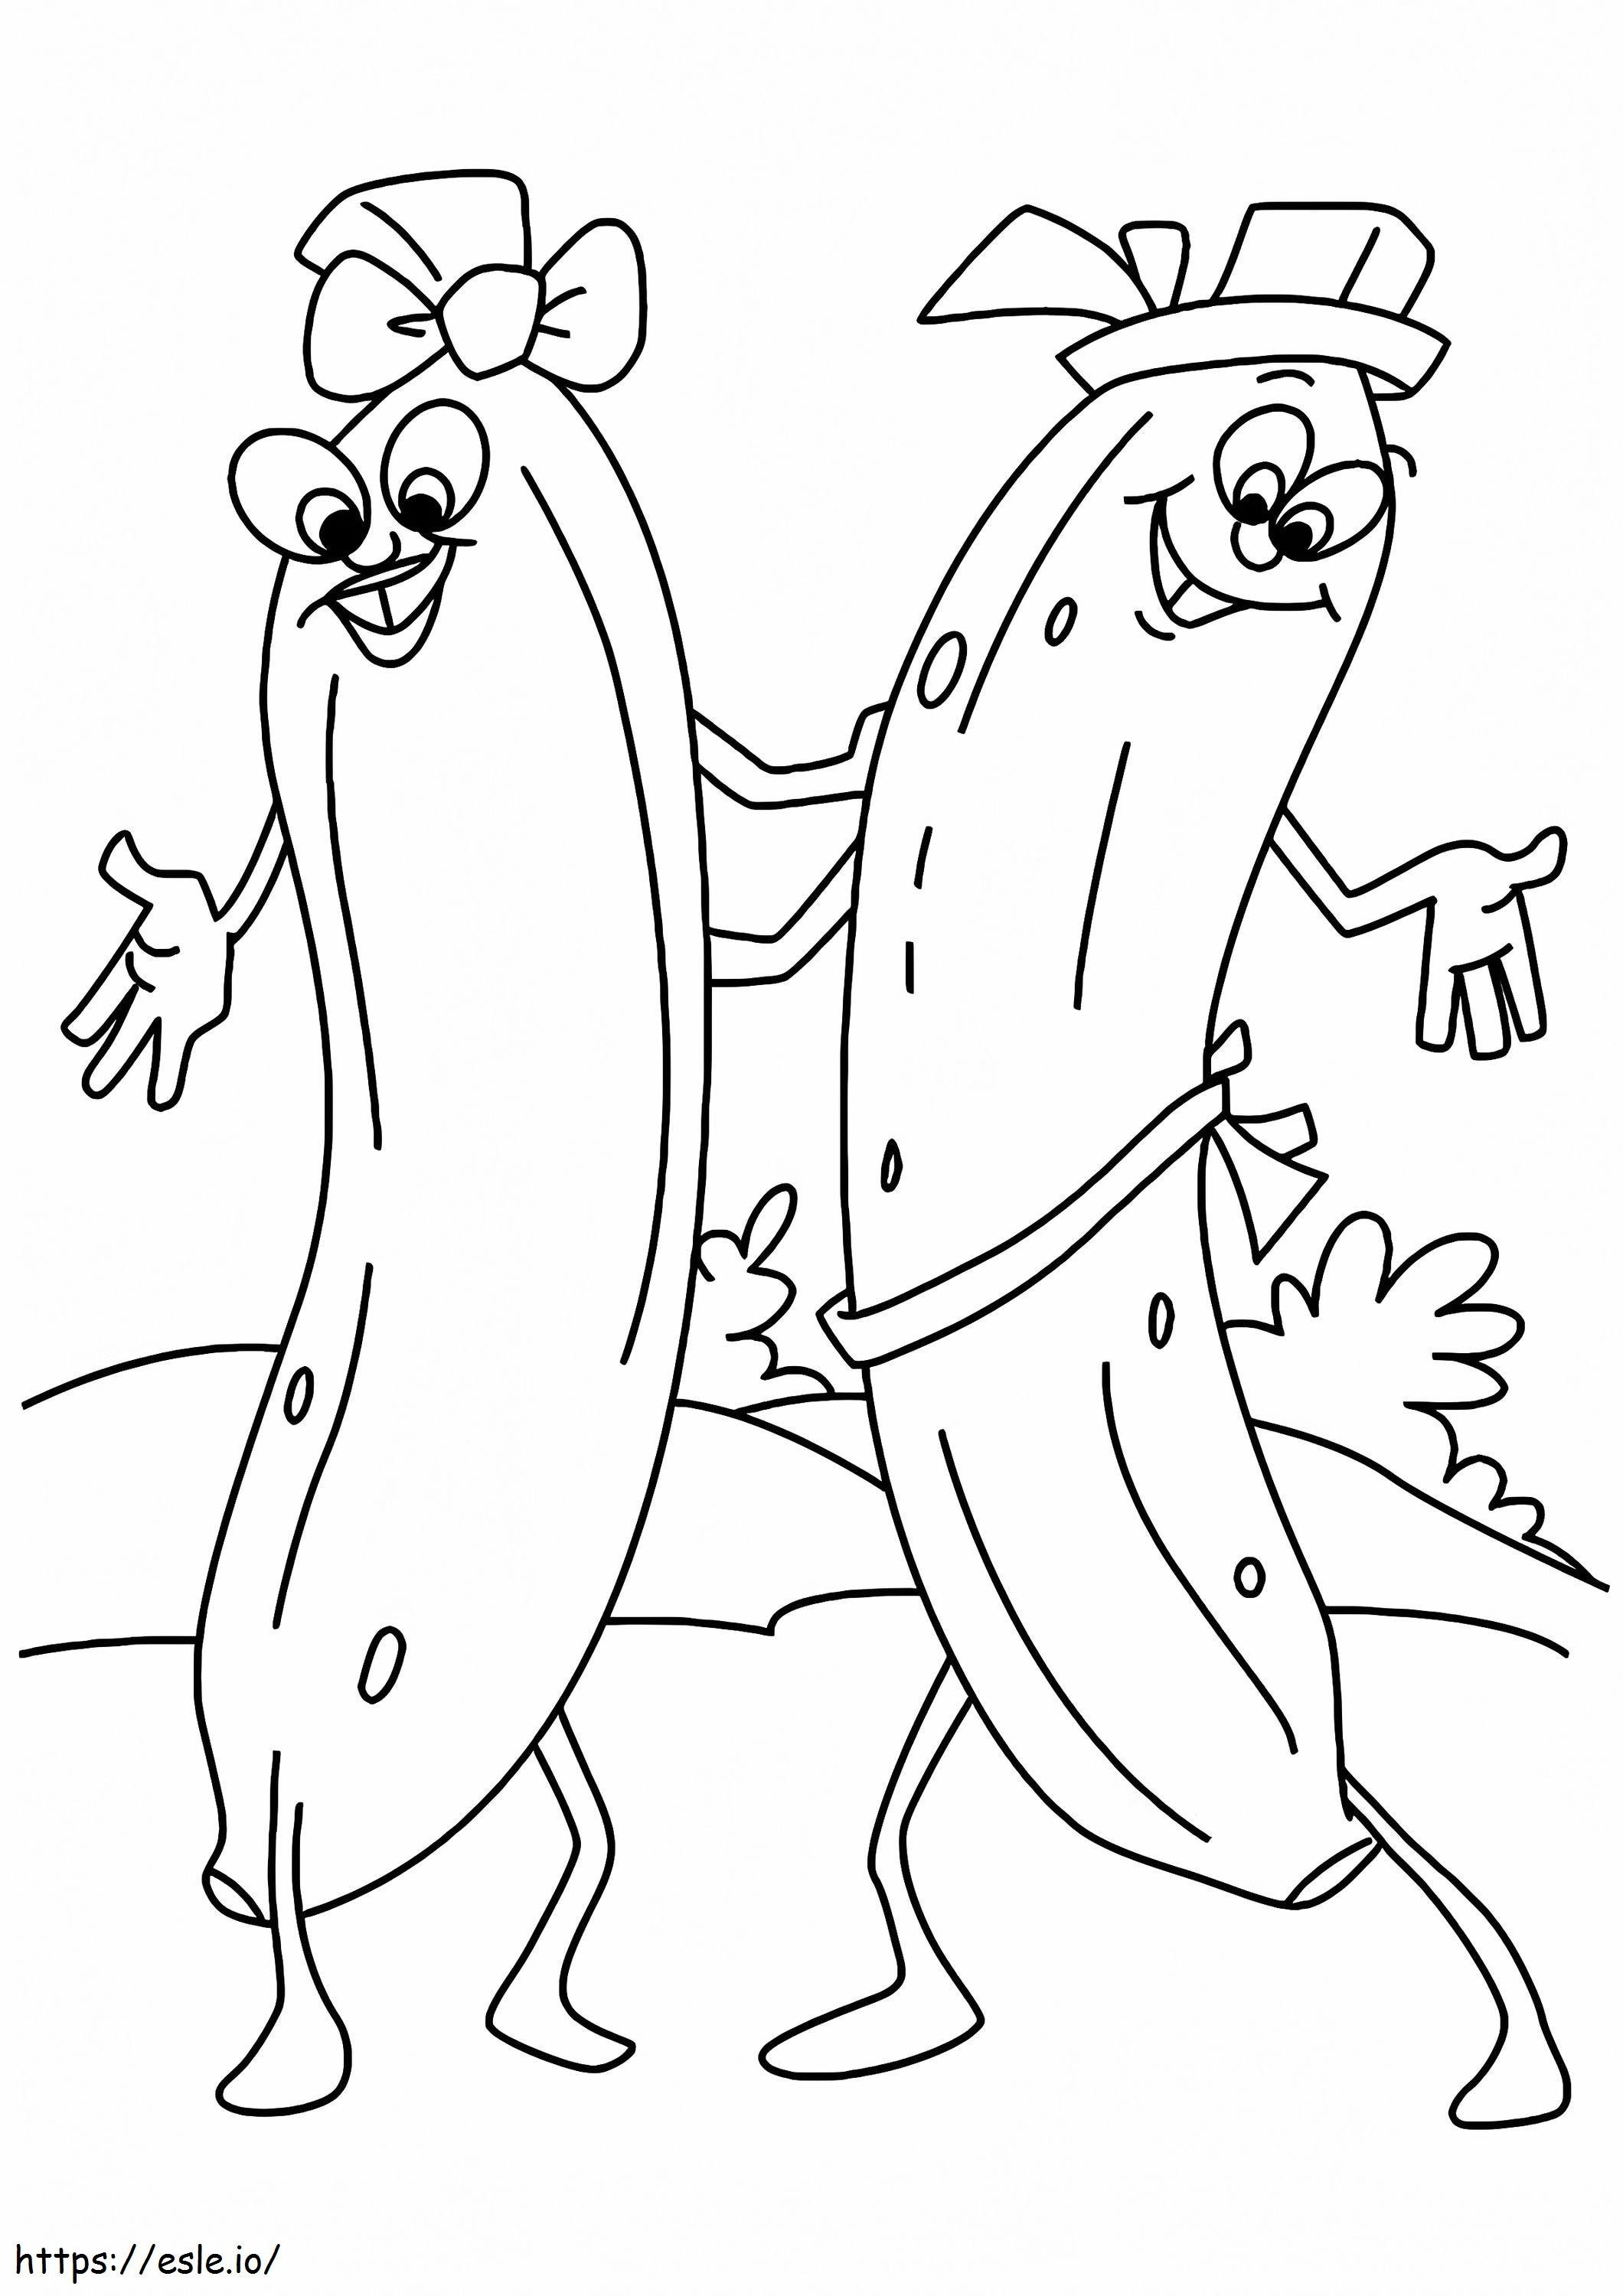 1530586891 Die tanzenden Bananen A4 ausmalbilder